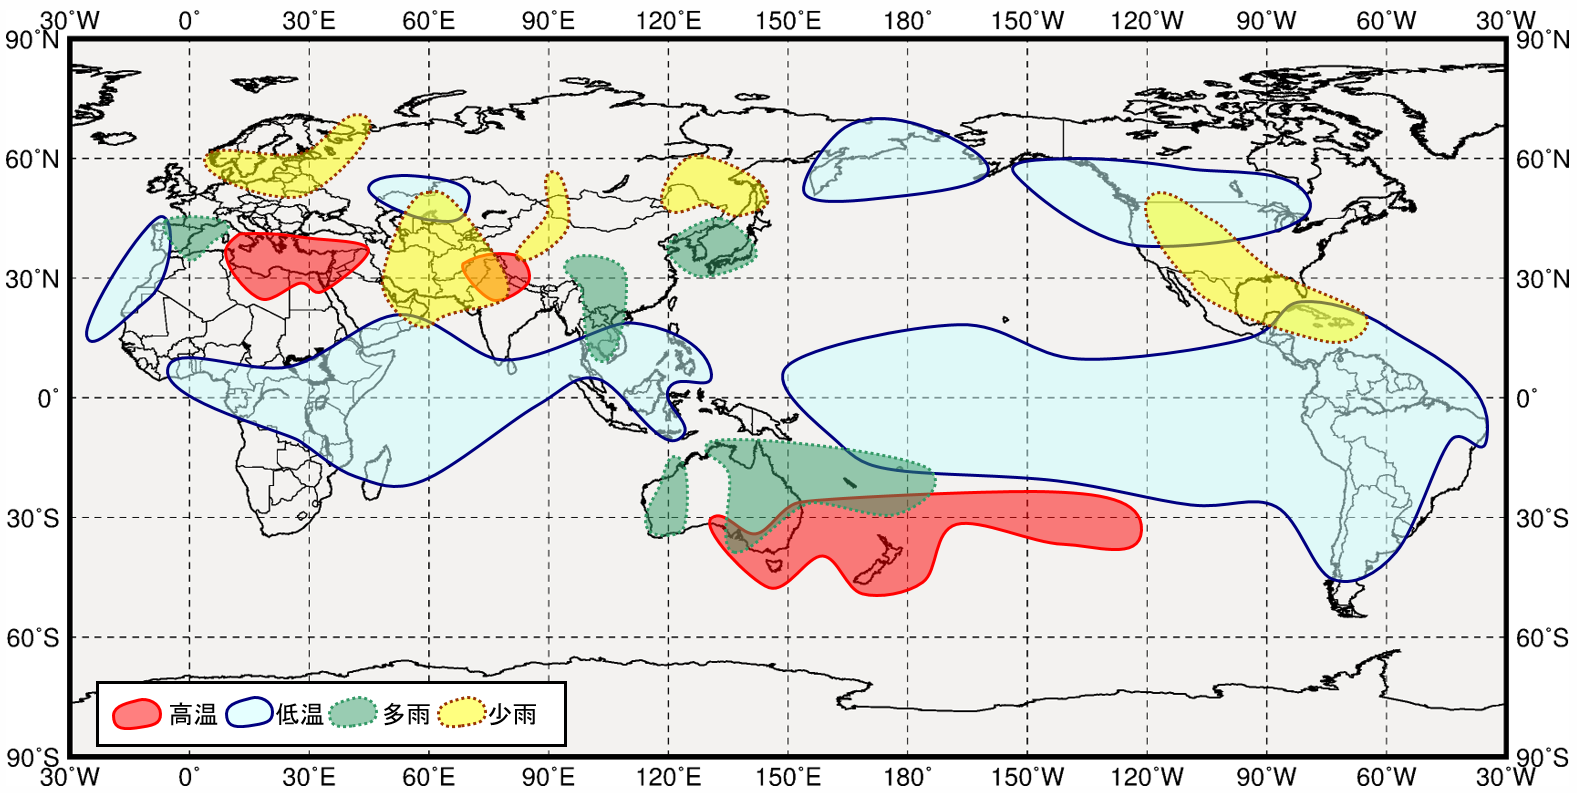 ラニーニャ現象発生時の世界の３月から５月にかけての気温と降水量の傾向の分布図